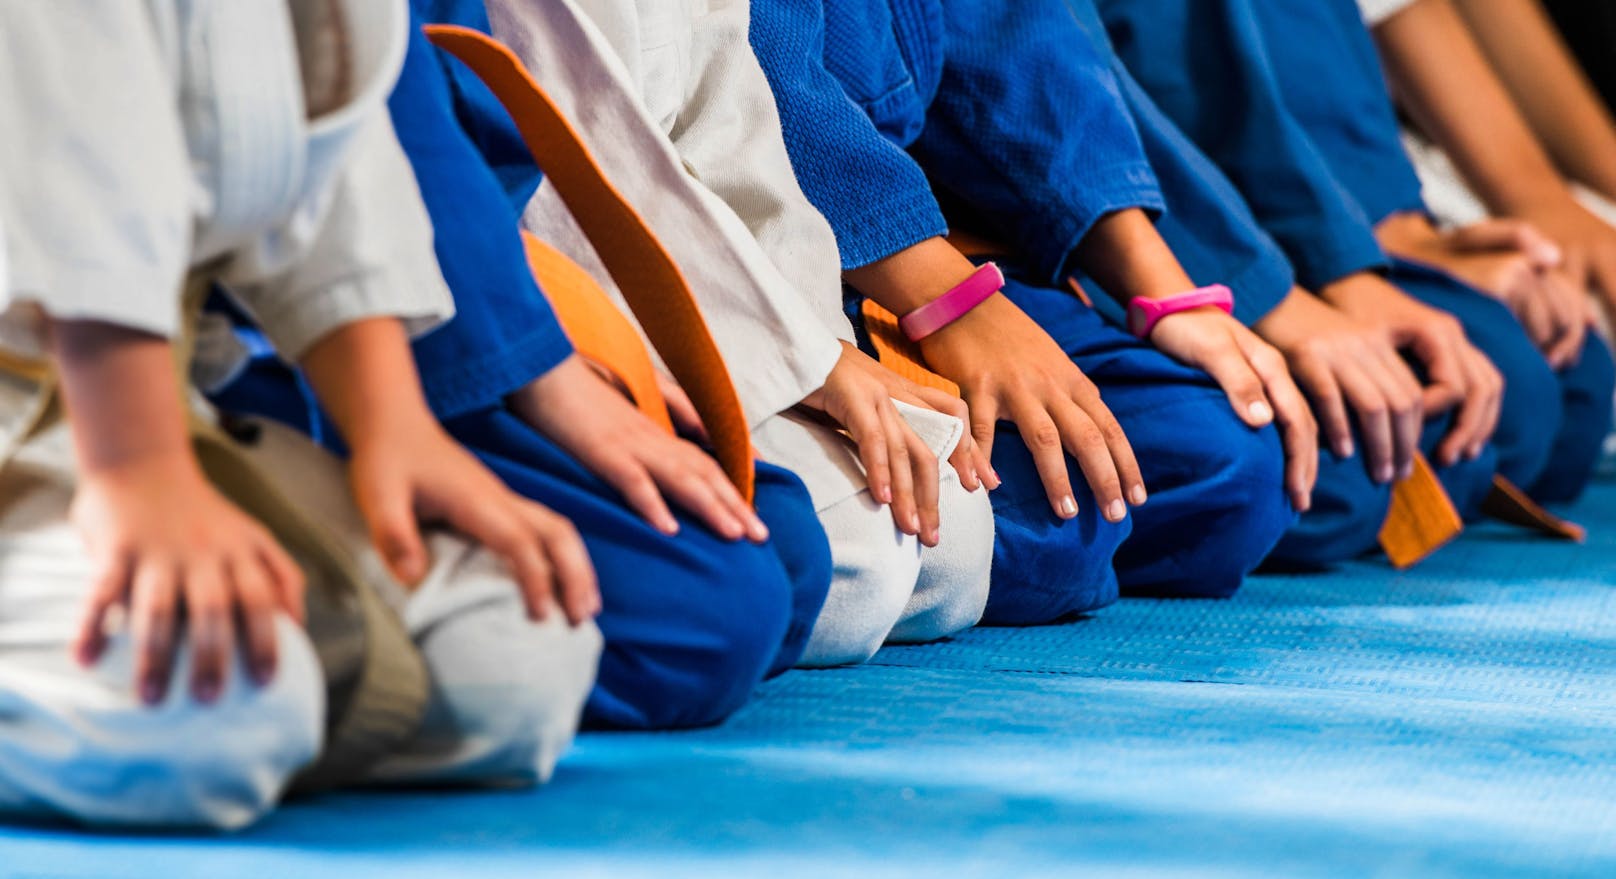 Judo-Lehrer wirft Bub (7) mehrmals zu Boden – tot